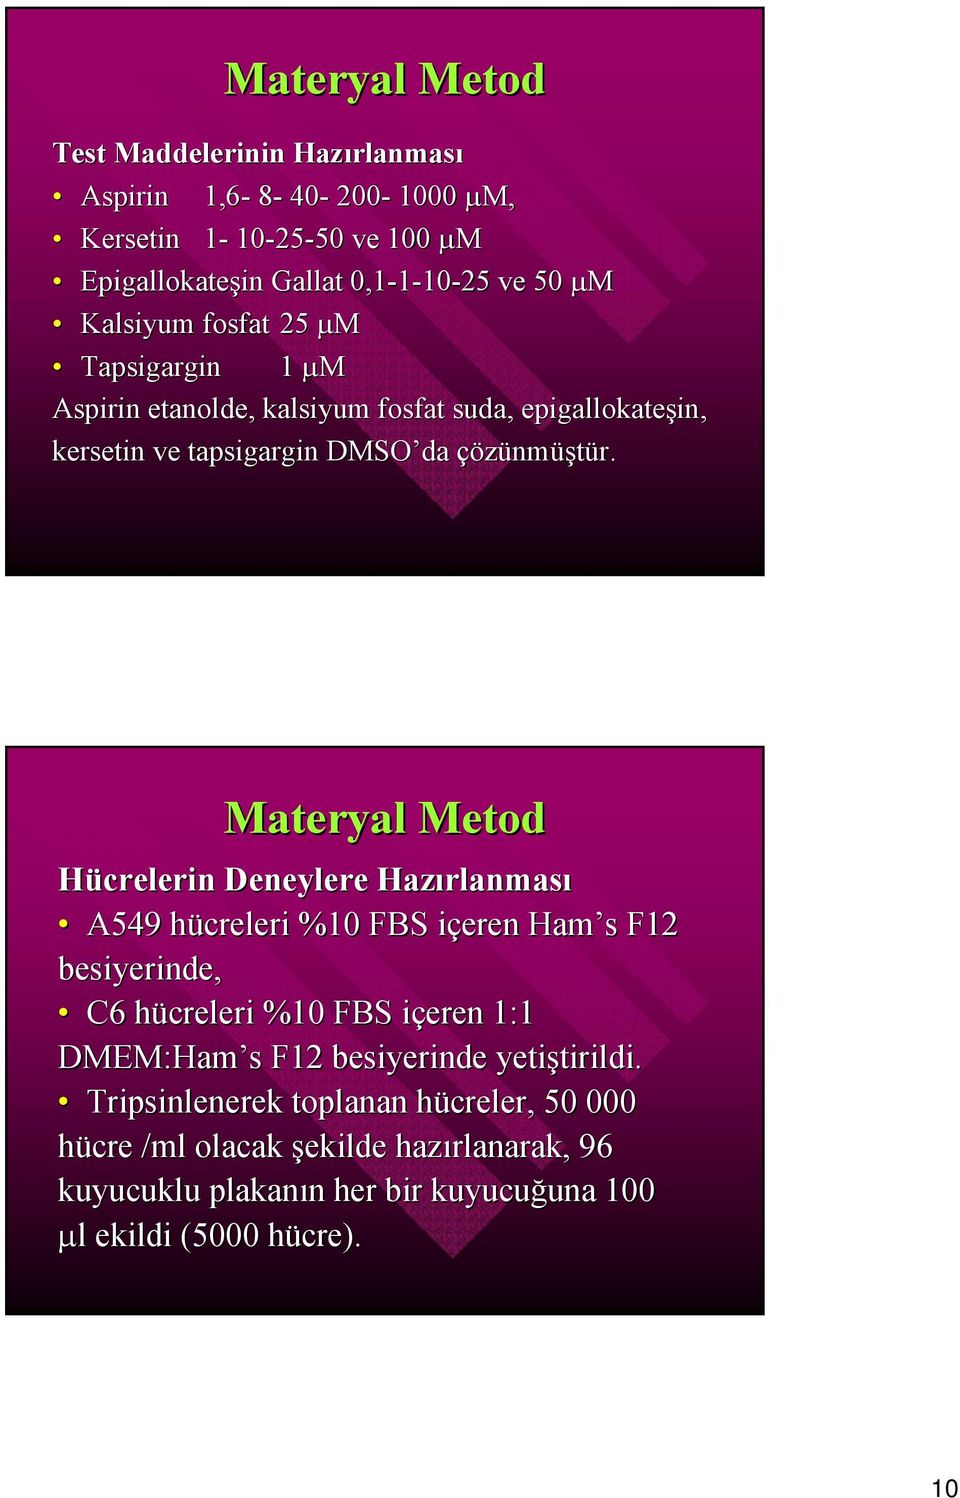 Materyal Metod Hücrelerin Deneylere Hazırlanması A549 hücreleri %1 FBS içeren Ham s F12 besiyerinde, C6 hücreleri %1 FBS içeren 1:1 DMEM:Ham s F12